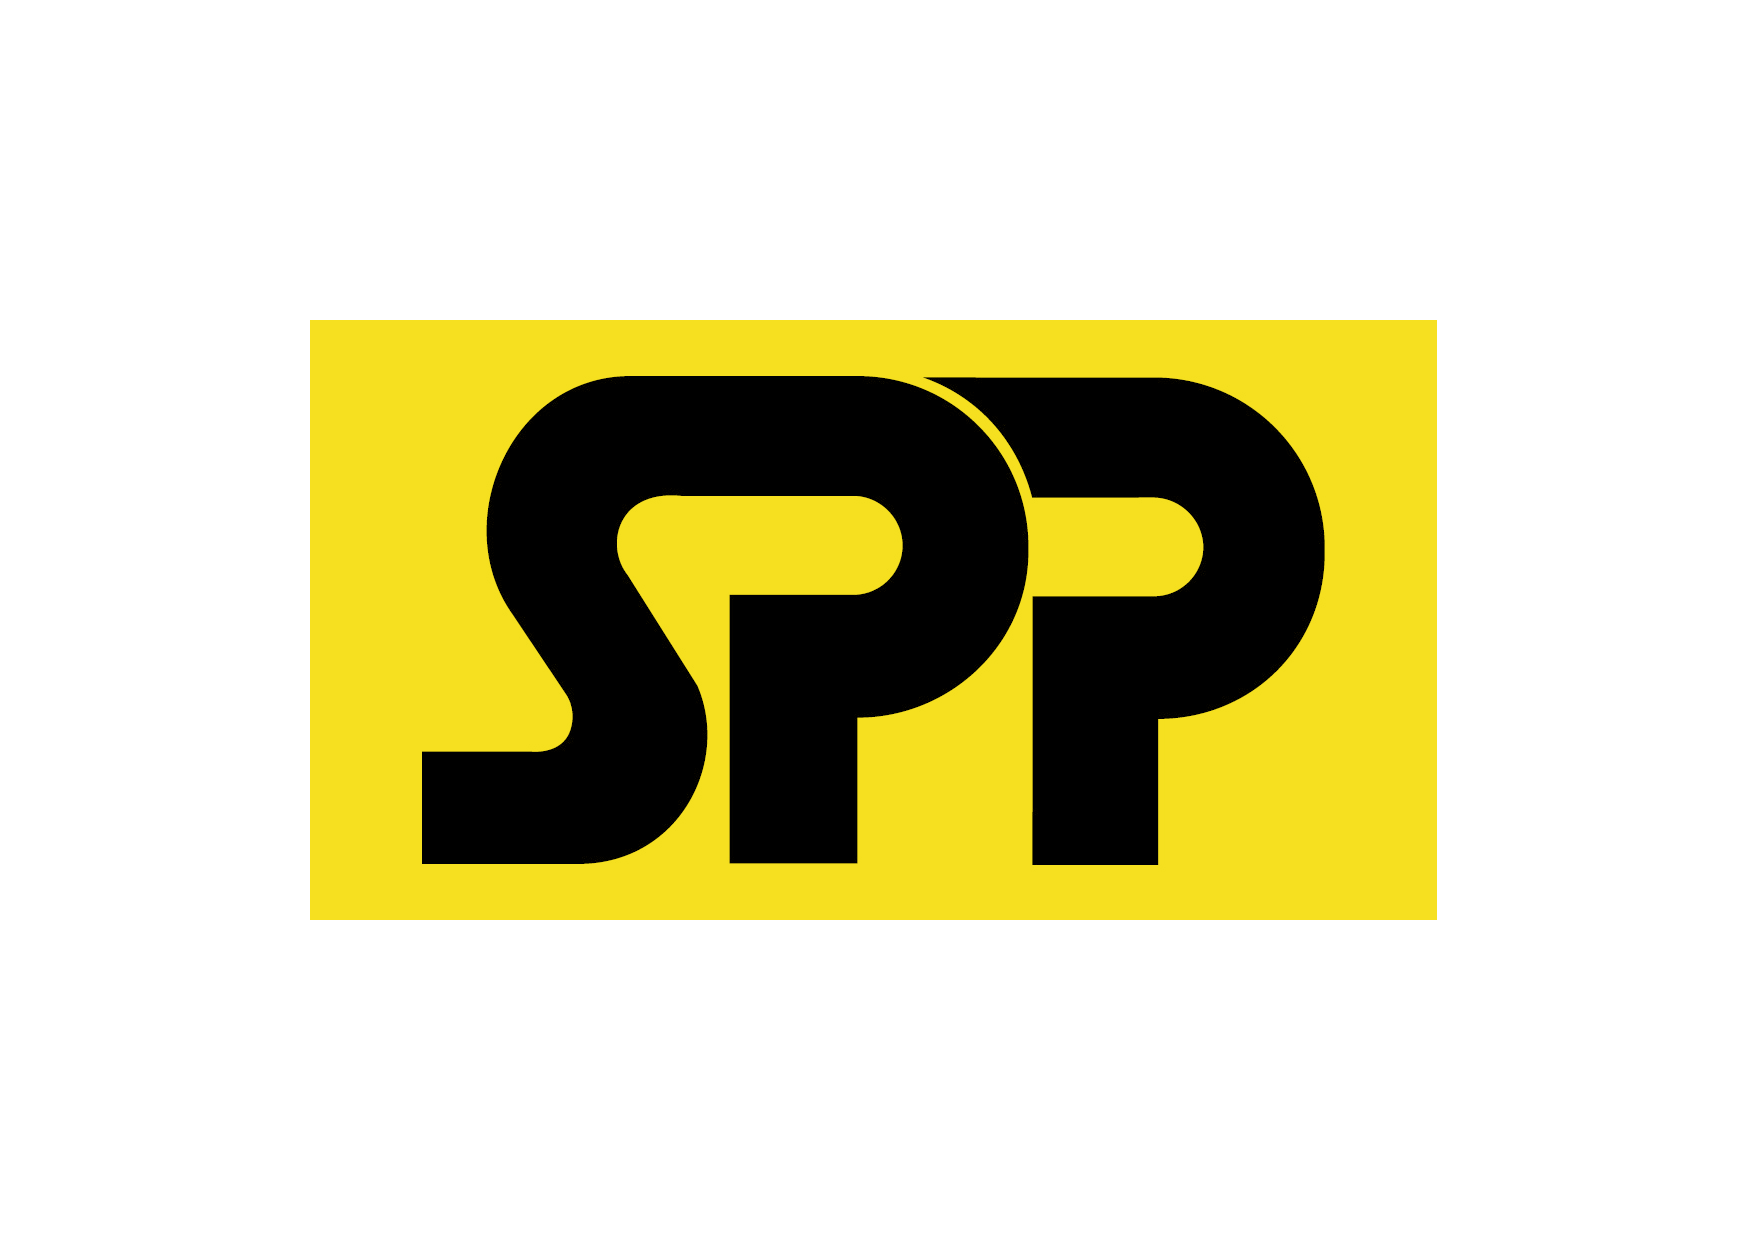 spp-logo